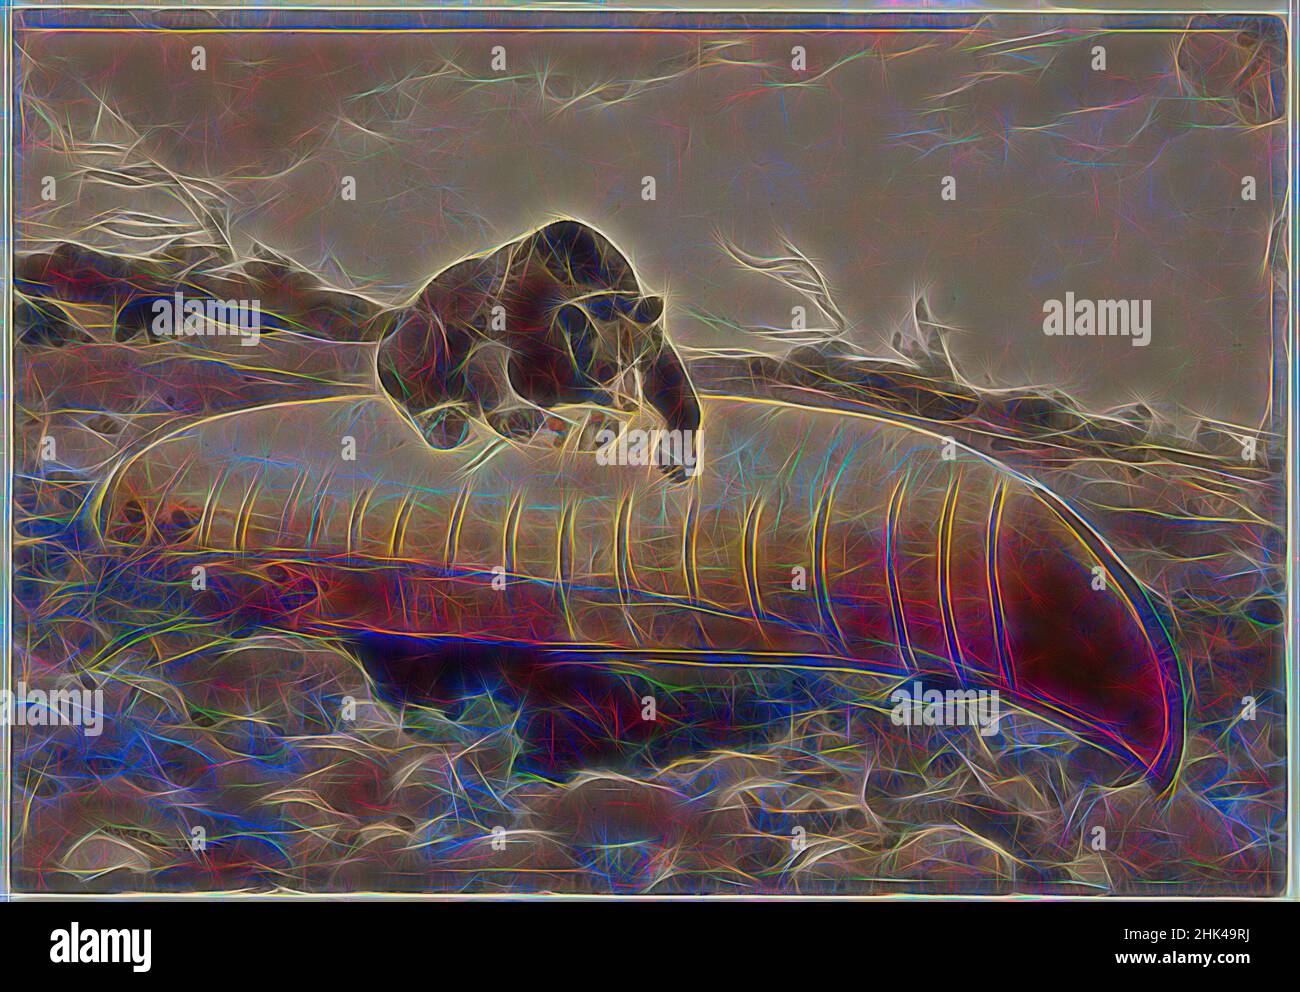 Ispirato da Orso e canoa, Winslow Homer, americano, 1836-1910, acquerello con tocchi di gomma vernice su grafite su crema, moderatamente spessa, moderatamente testurizzata carta di vove, 1895, 14 x 20 in., 35,6 x 50,8 cm, 1895, american, American art, American painting, Acquerello americano, animale, orso, barca, reinventato da Artotop. L'arte classica reinventata con un tocco moderno. Design di calda e allegra luminosità e di raggi di luce. La fotografia si ispira al surrealismo e al futurismo, abbracciando l'energia dinamica della tecnologia moderna, del movimento, della velocità e rivoluzionando la cultura Foto Stock